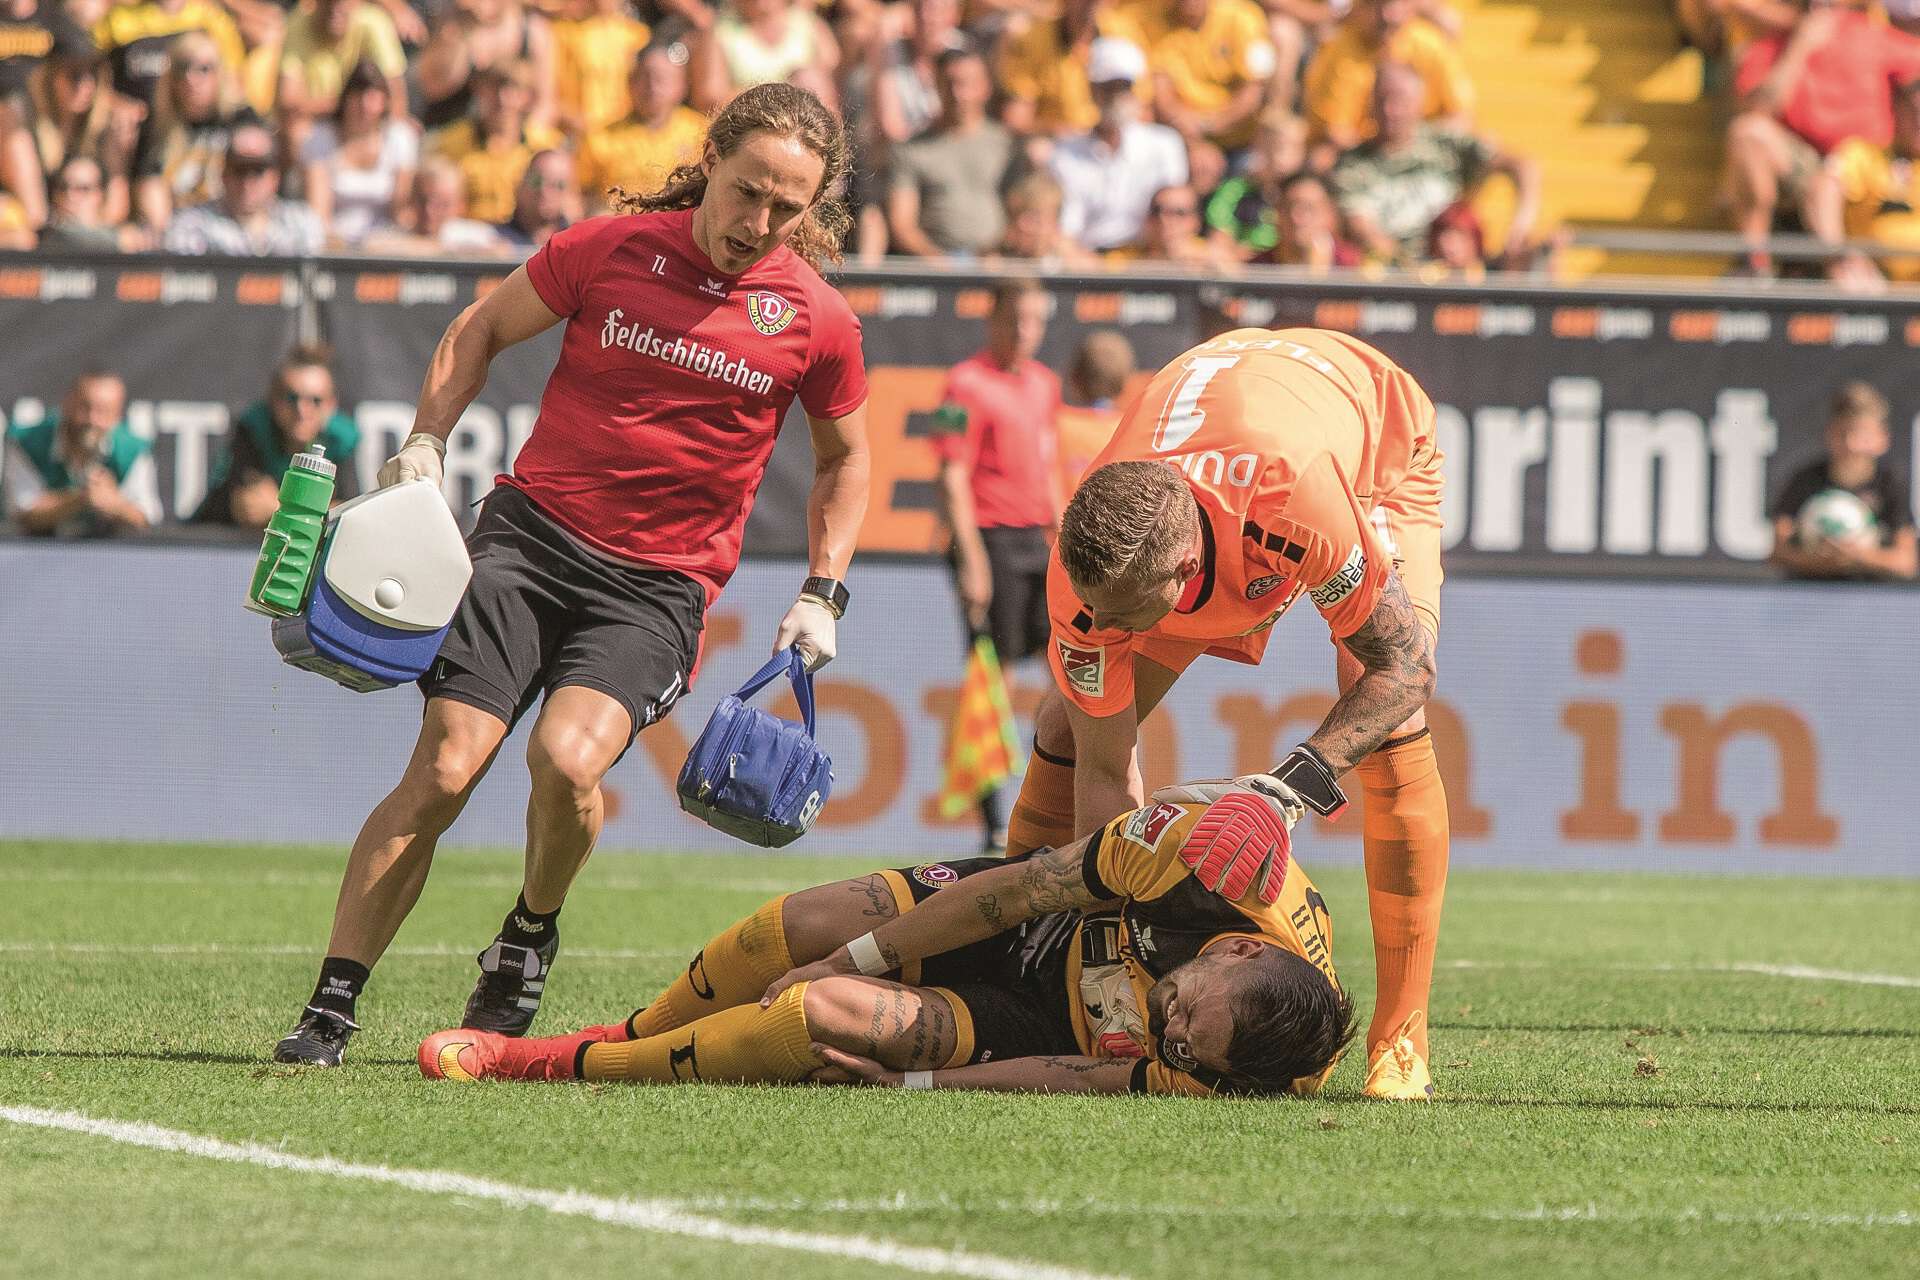 Pascal Testroet von Dynamo Dresden liegt verletzt auf dem Boden, Gegenspieler und medizinischer Betreuer kommen hinzu